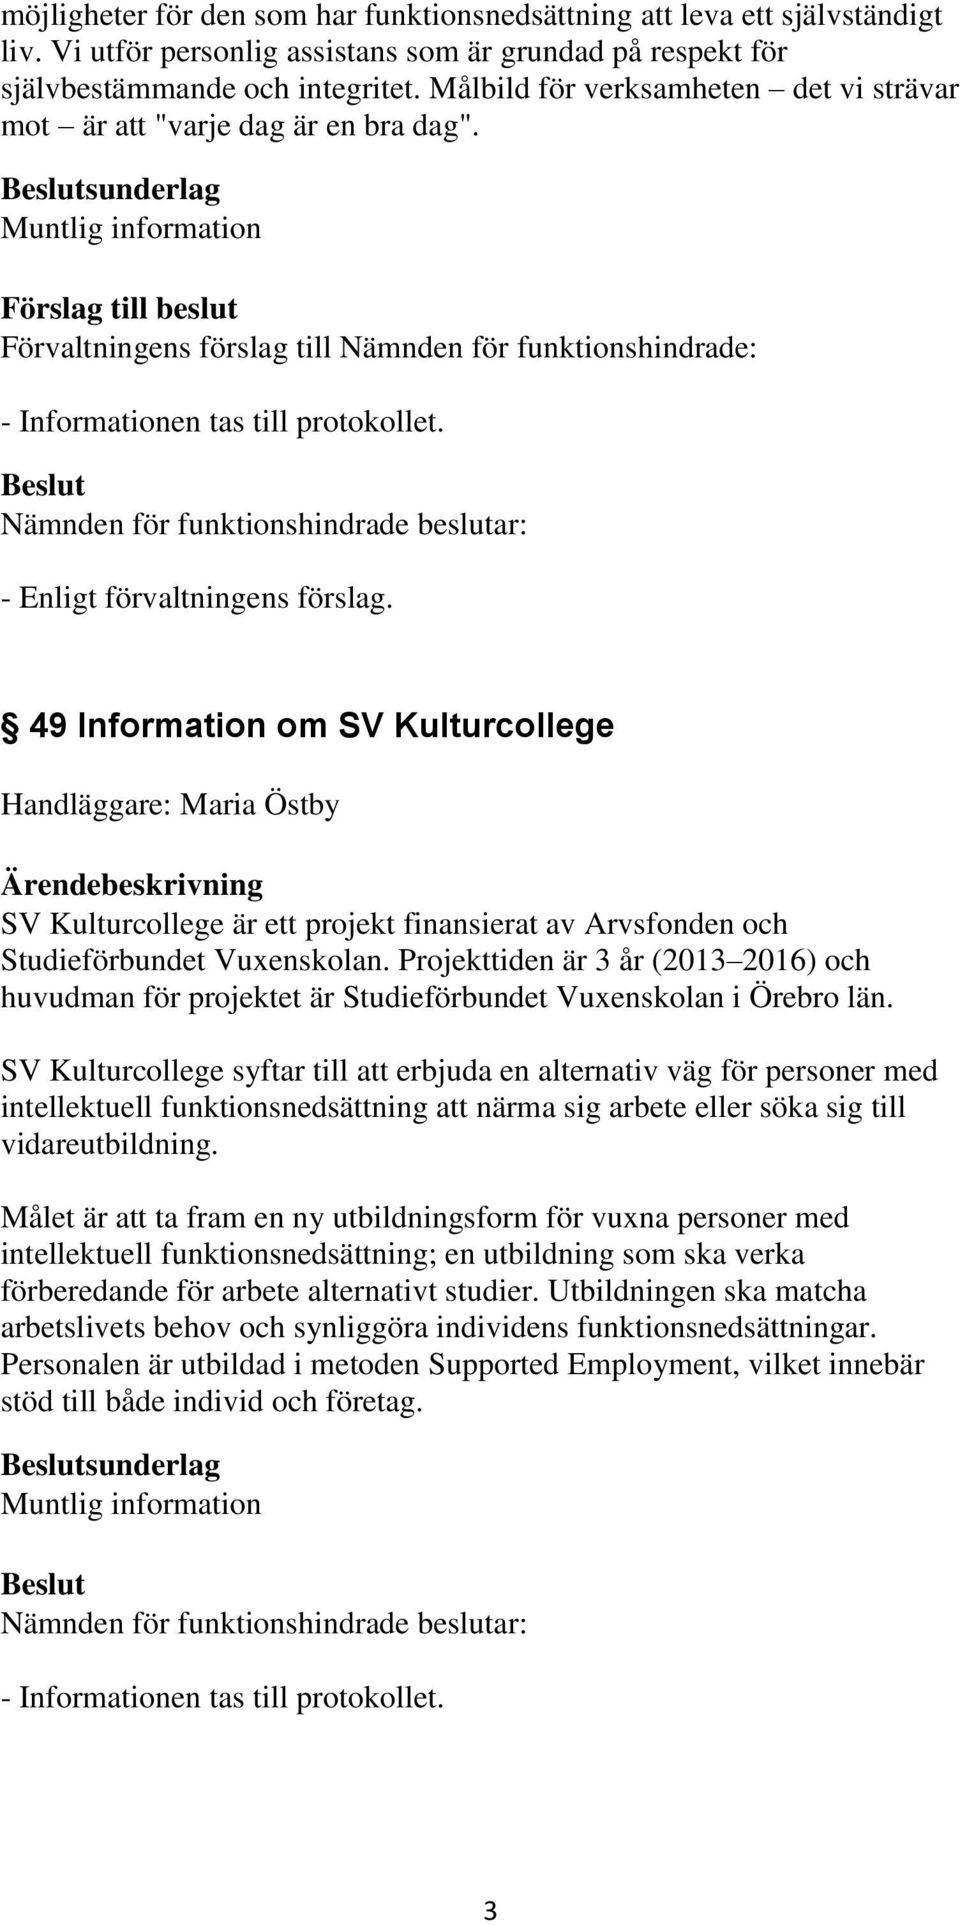 49 Information om SV Kulturcollege Handläggare: Maria Östby SV Kulturcollege är ett projekt finansierat av Arvsfonden och Studieförbundet Vuxenskolan.